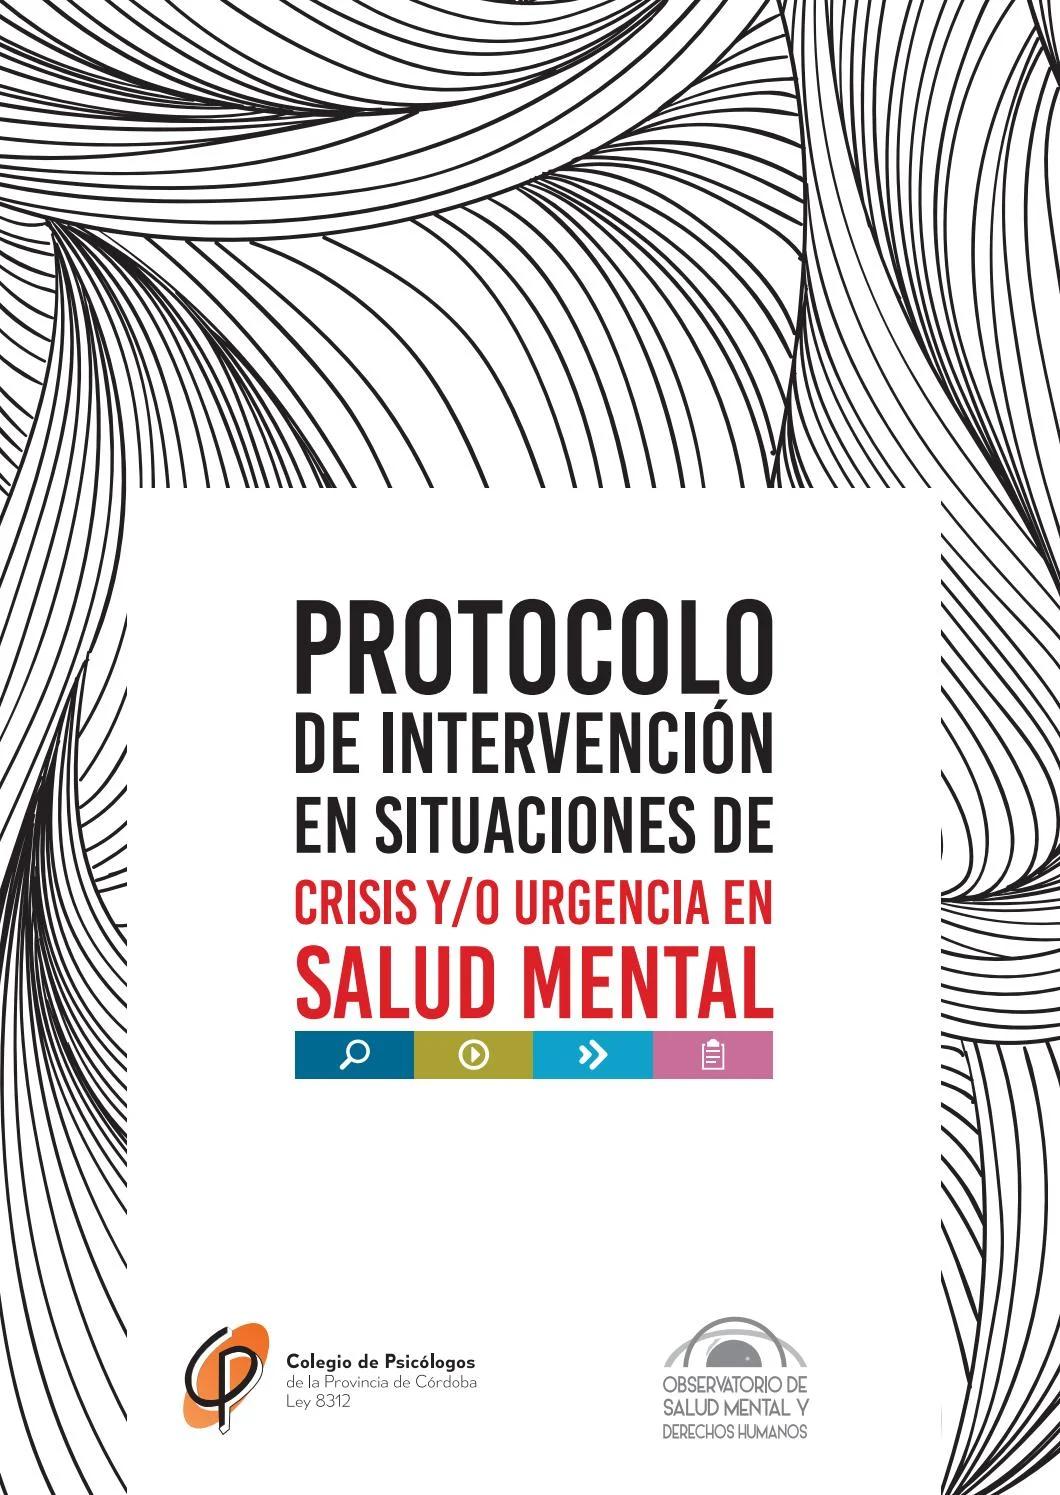 abordaje en urgencias psicológicas crisis - Cuál es el modelo de intervención en crisis